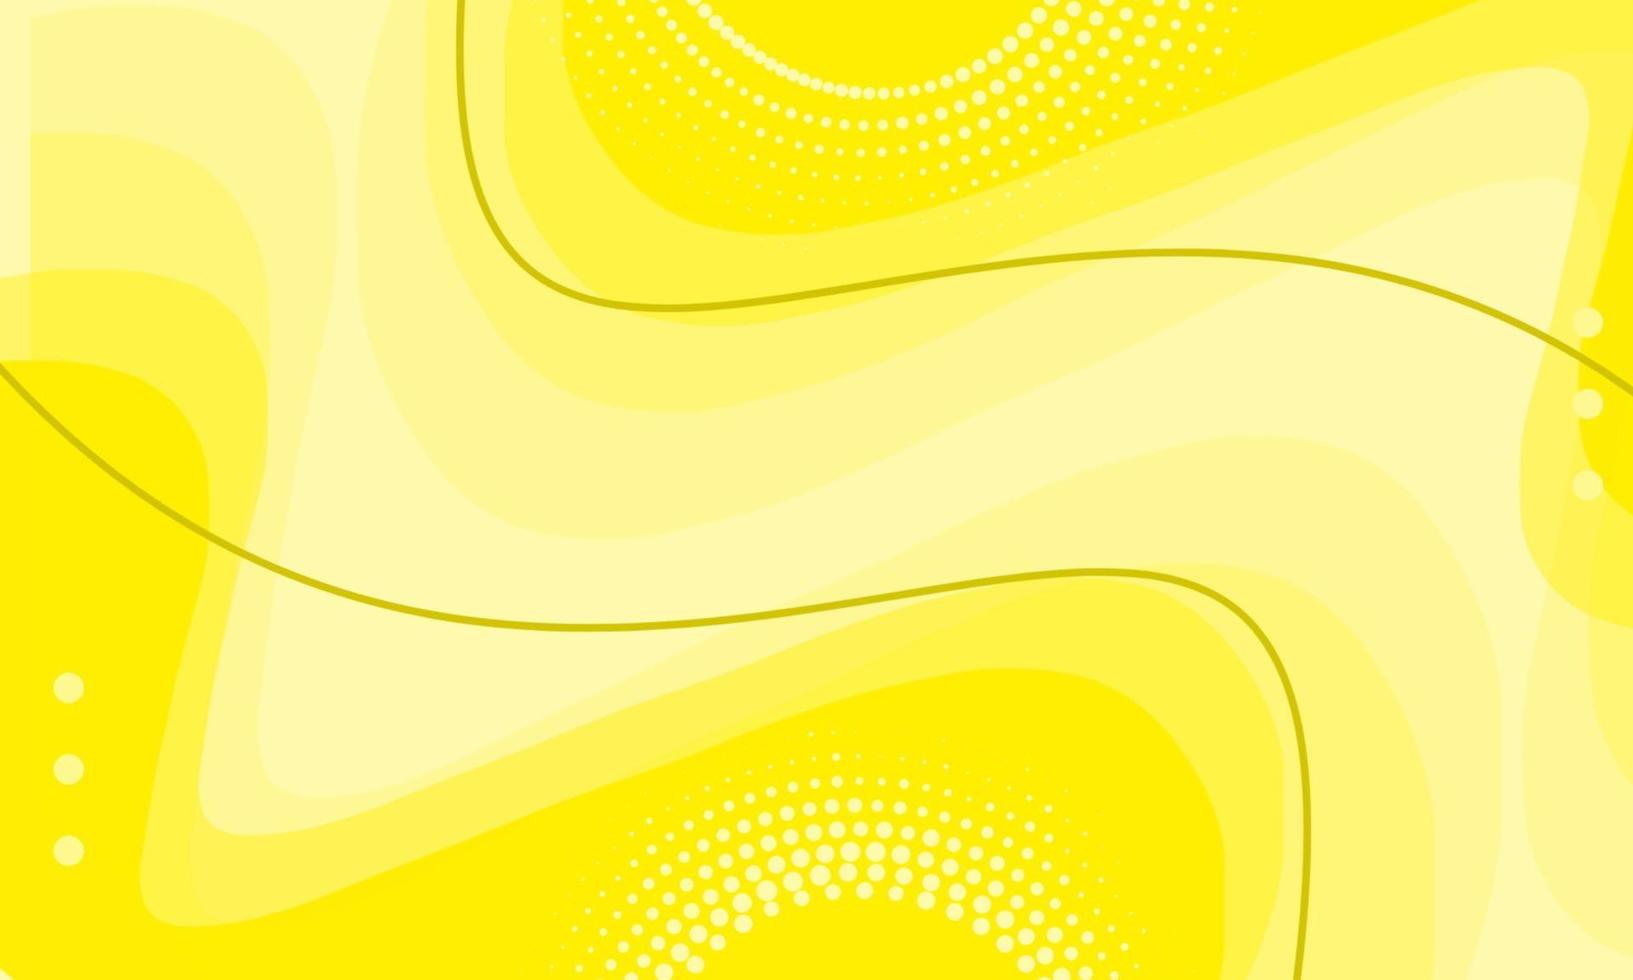 Gelber abstrakter Hintergrund kann als Cover, Poster, Banner oder etwas anderes verwendet werden vektor